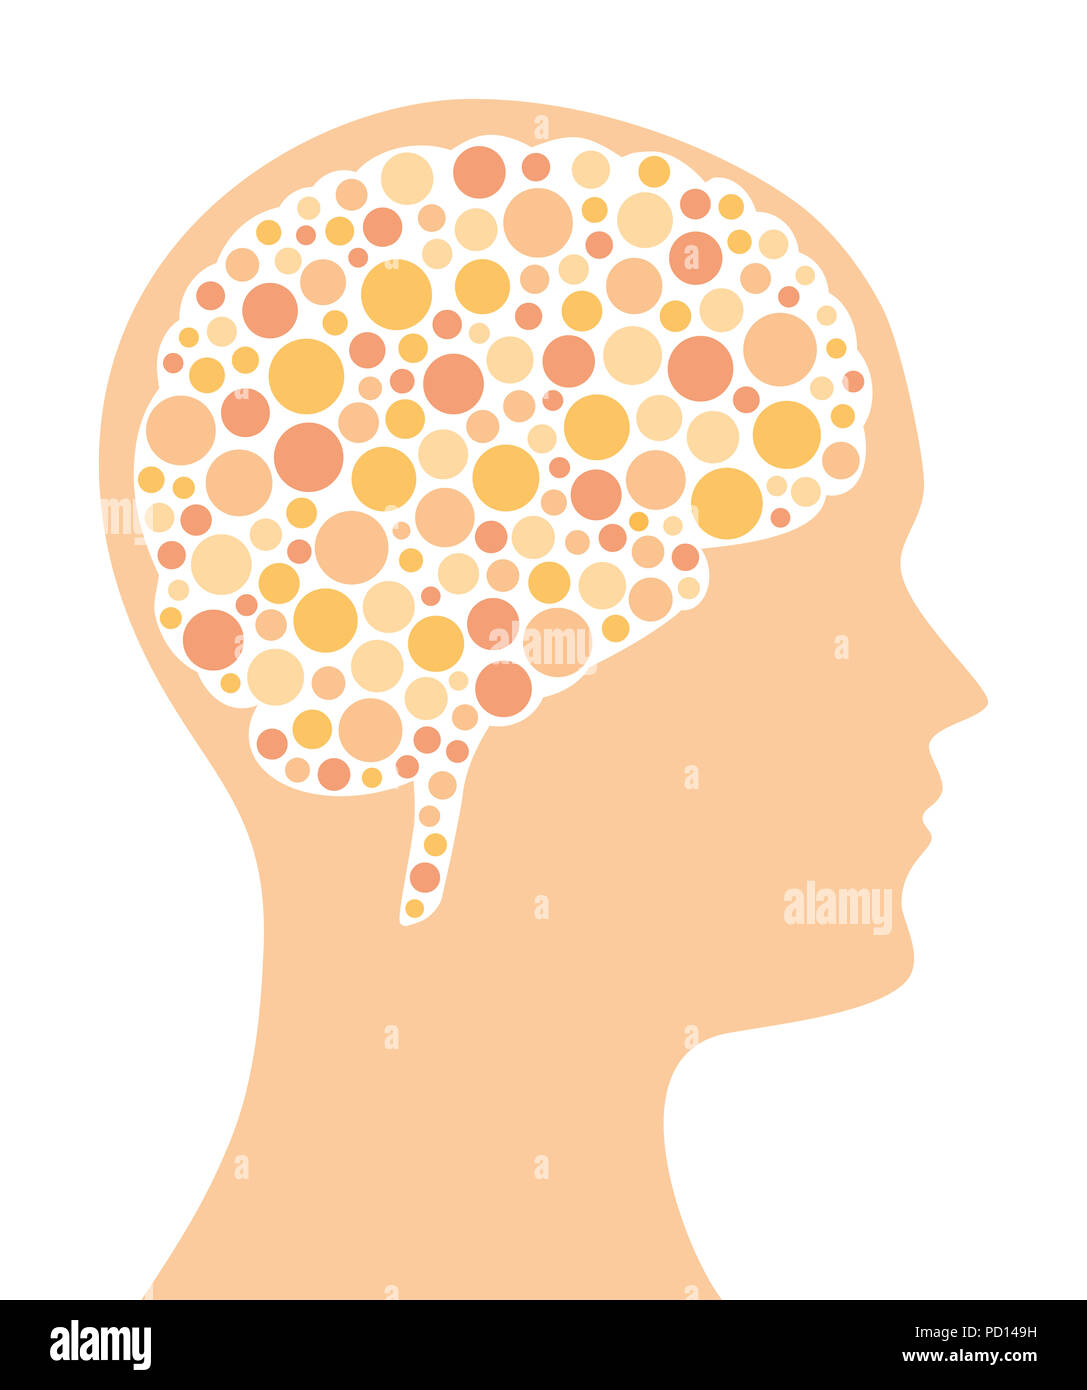 Molti punti colorati in un cervello nella forma e nel la silhouette di una testa. Modello punteggiato. Un simbolo per le idee, il modo di pensare e di immaginazione e creatività. Foto Stock